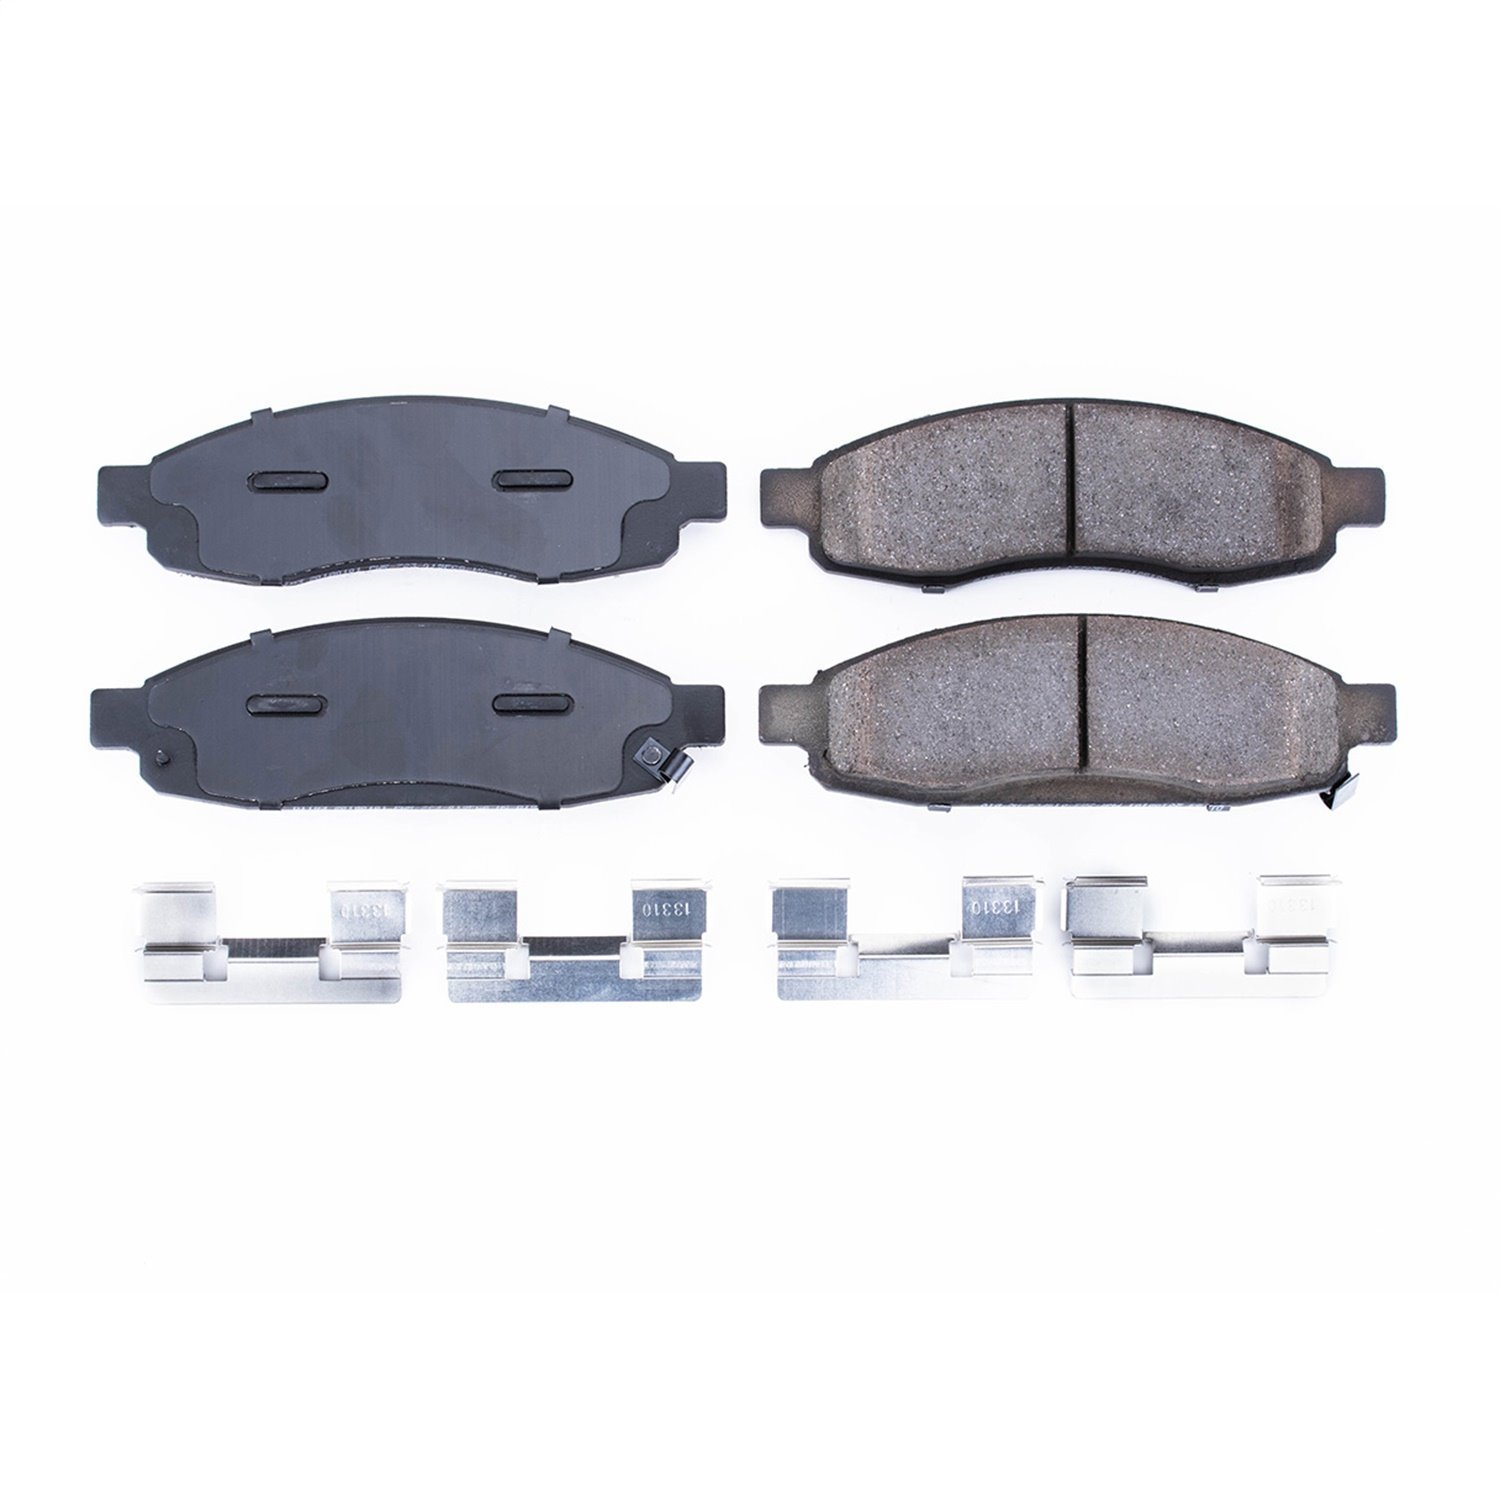 Z17 Evolution Ceramic Front Brake Pads Fits Infinite/Nissan Select 2005-2007 Models